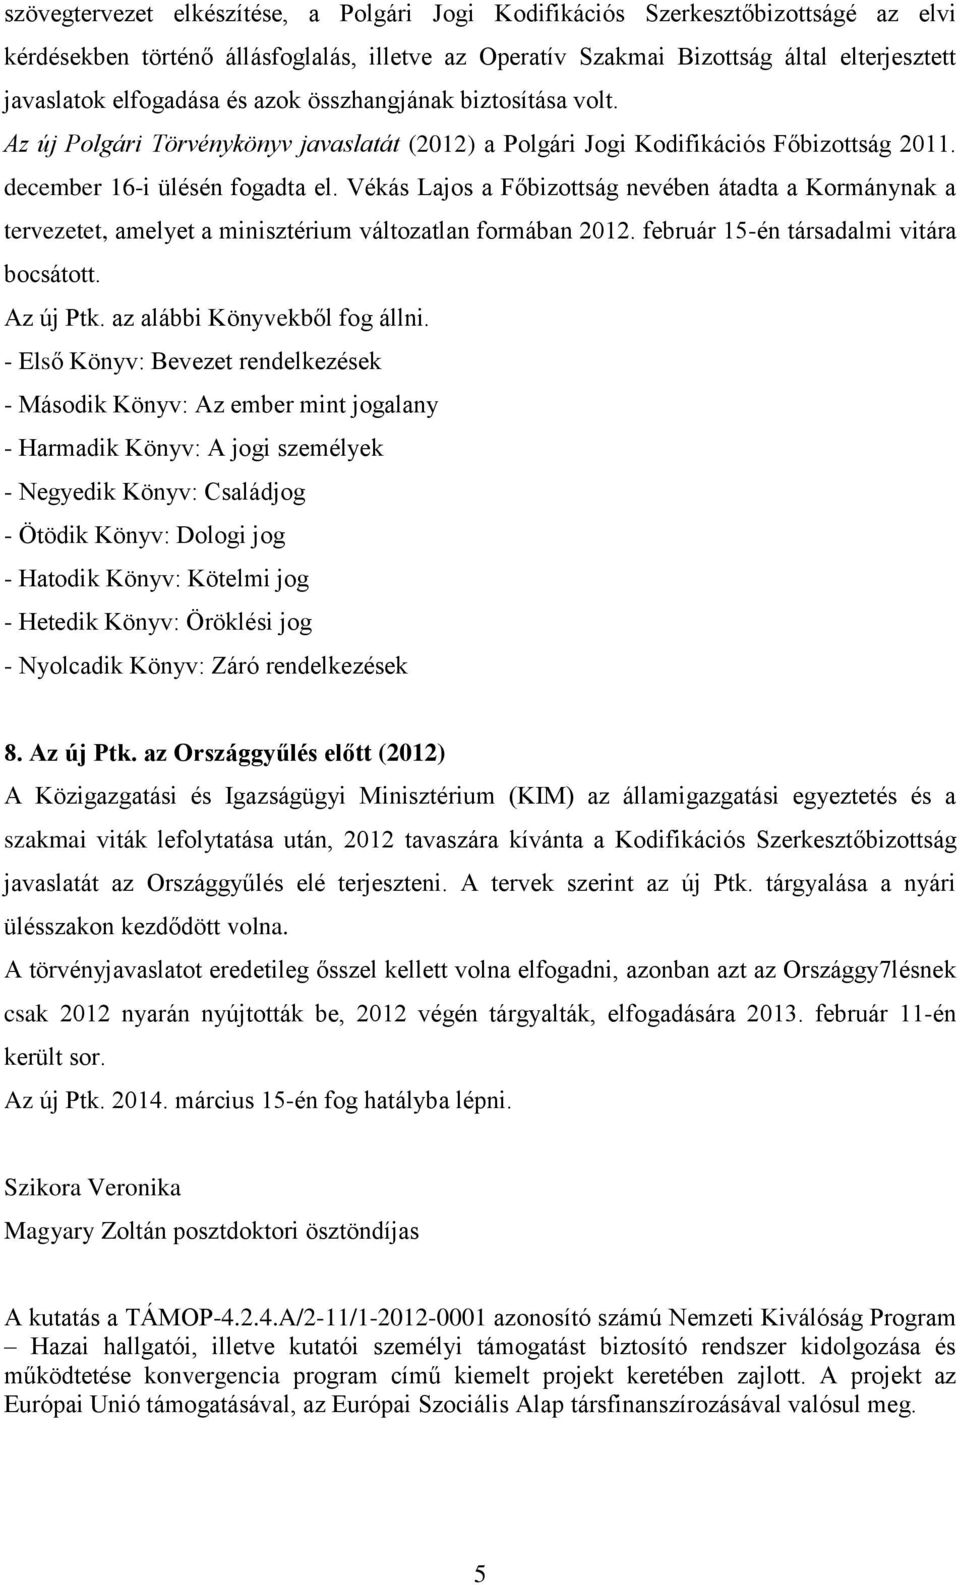 Vékás Lajos a Főbizottság nevében átadta a Kormánynak a tervezetet, amelyet a minisztérium változatlan formában 2012. február 15-én társadalmi vitára bocsátott. Az új Ptk.